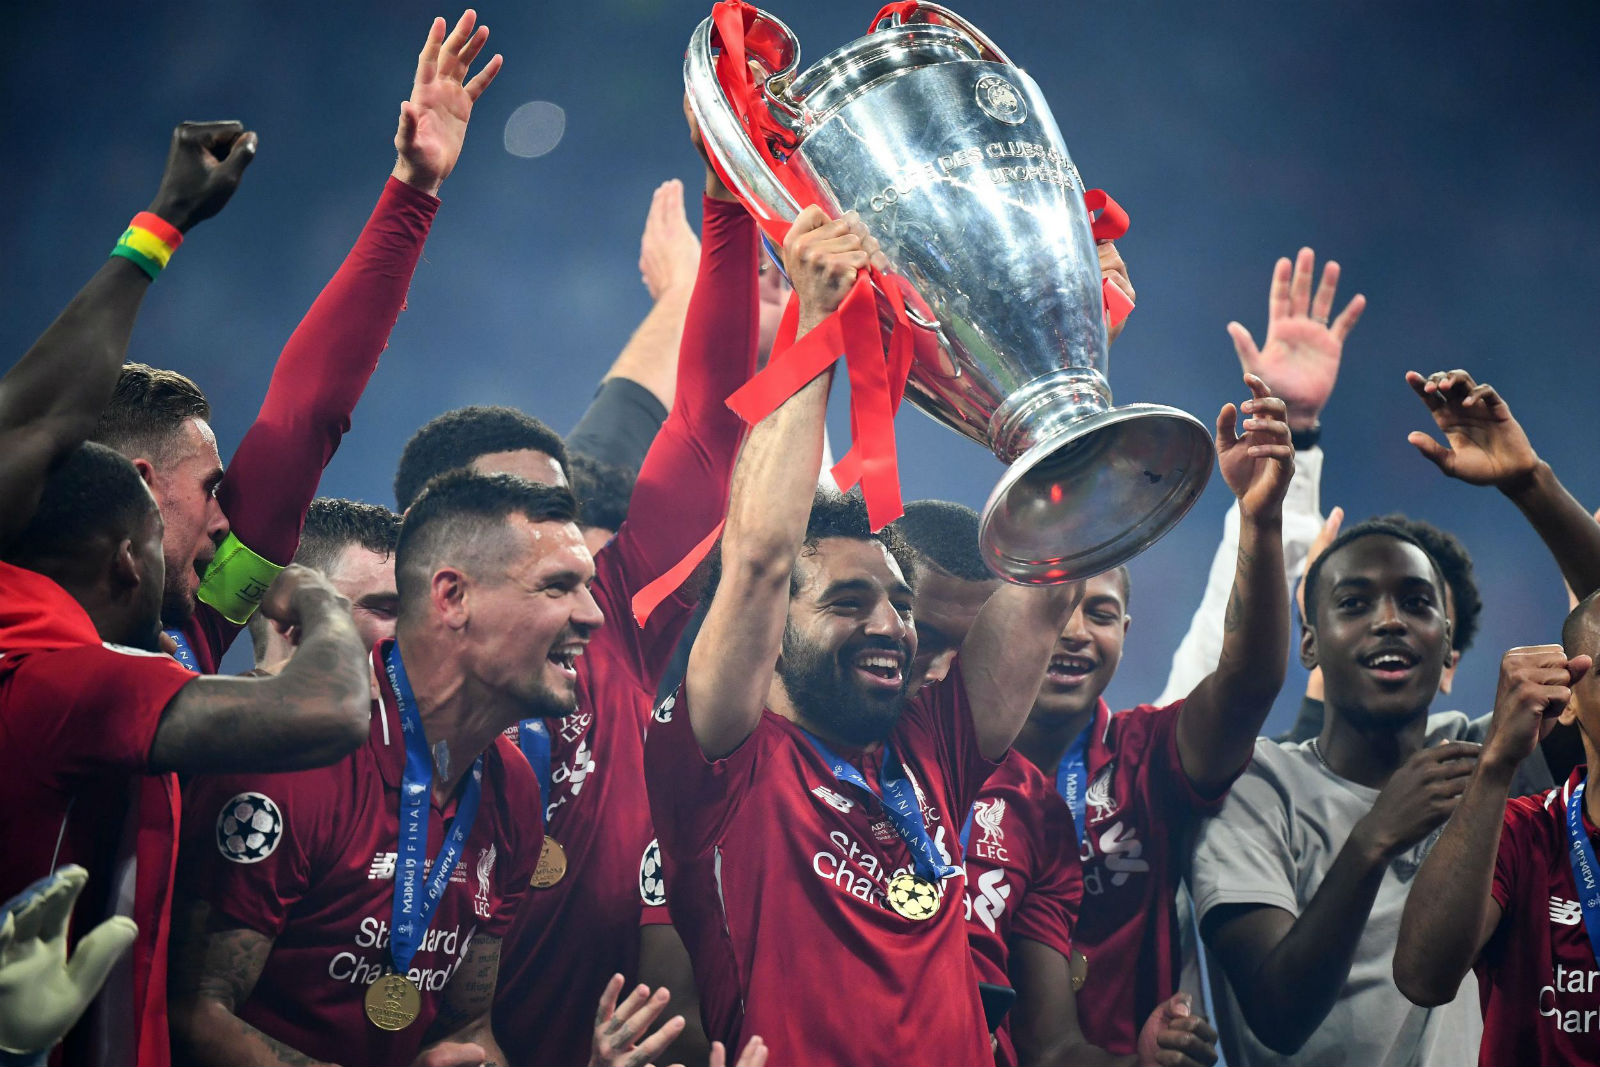 Hình ảnh nâng cúp vô địch Champions League của Salah trong mùa giải 2019/20 (ảnh: Internet)